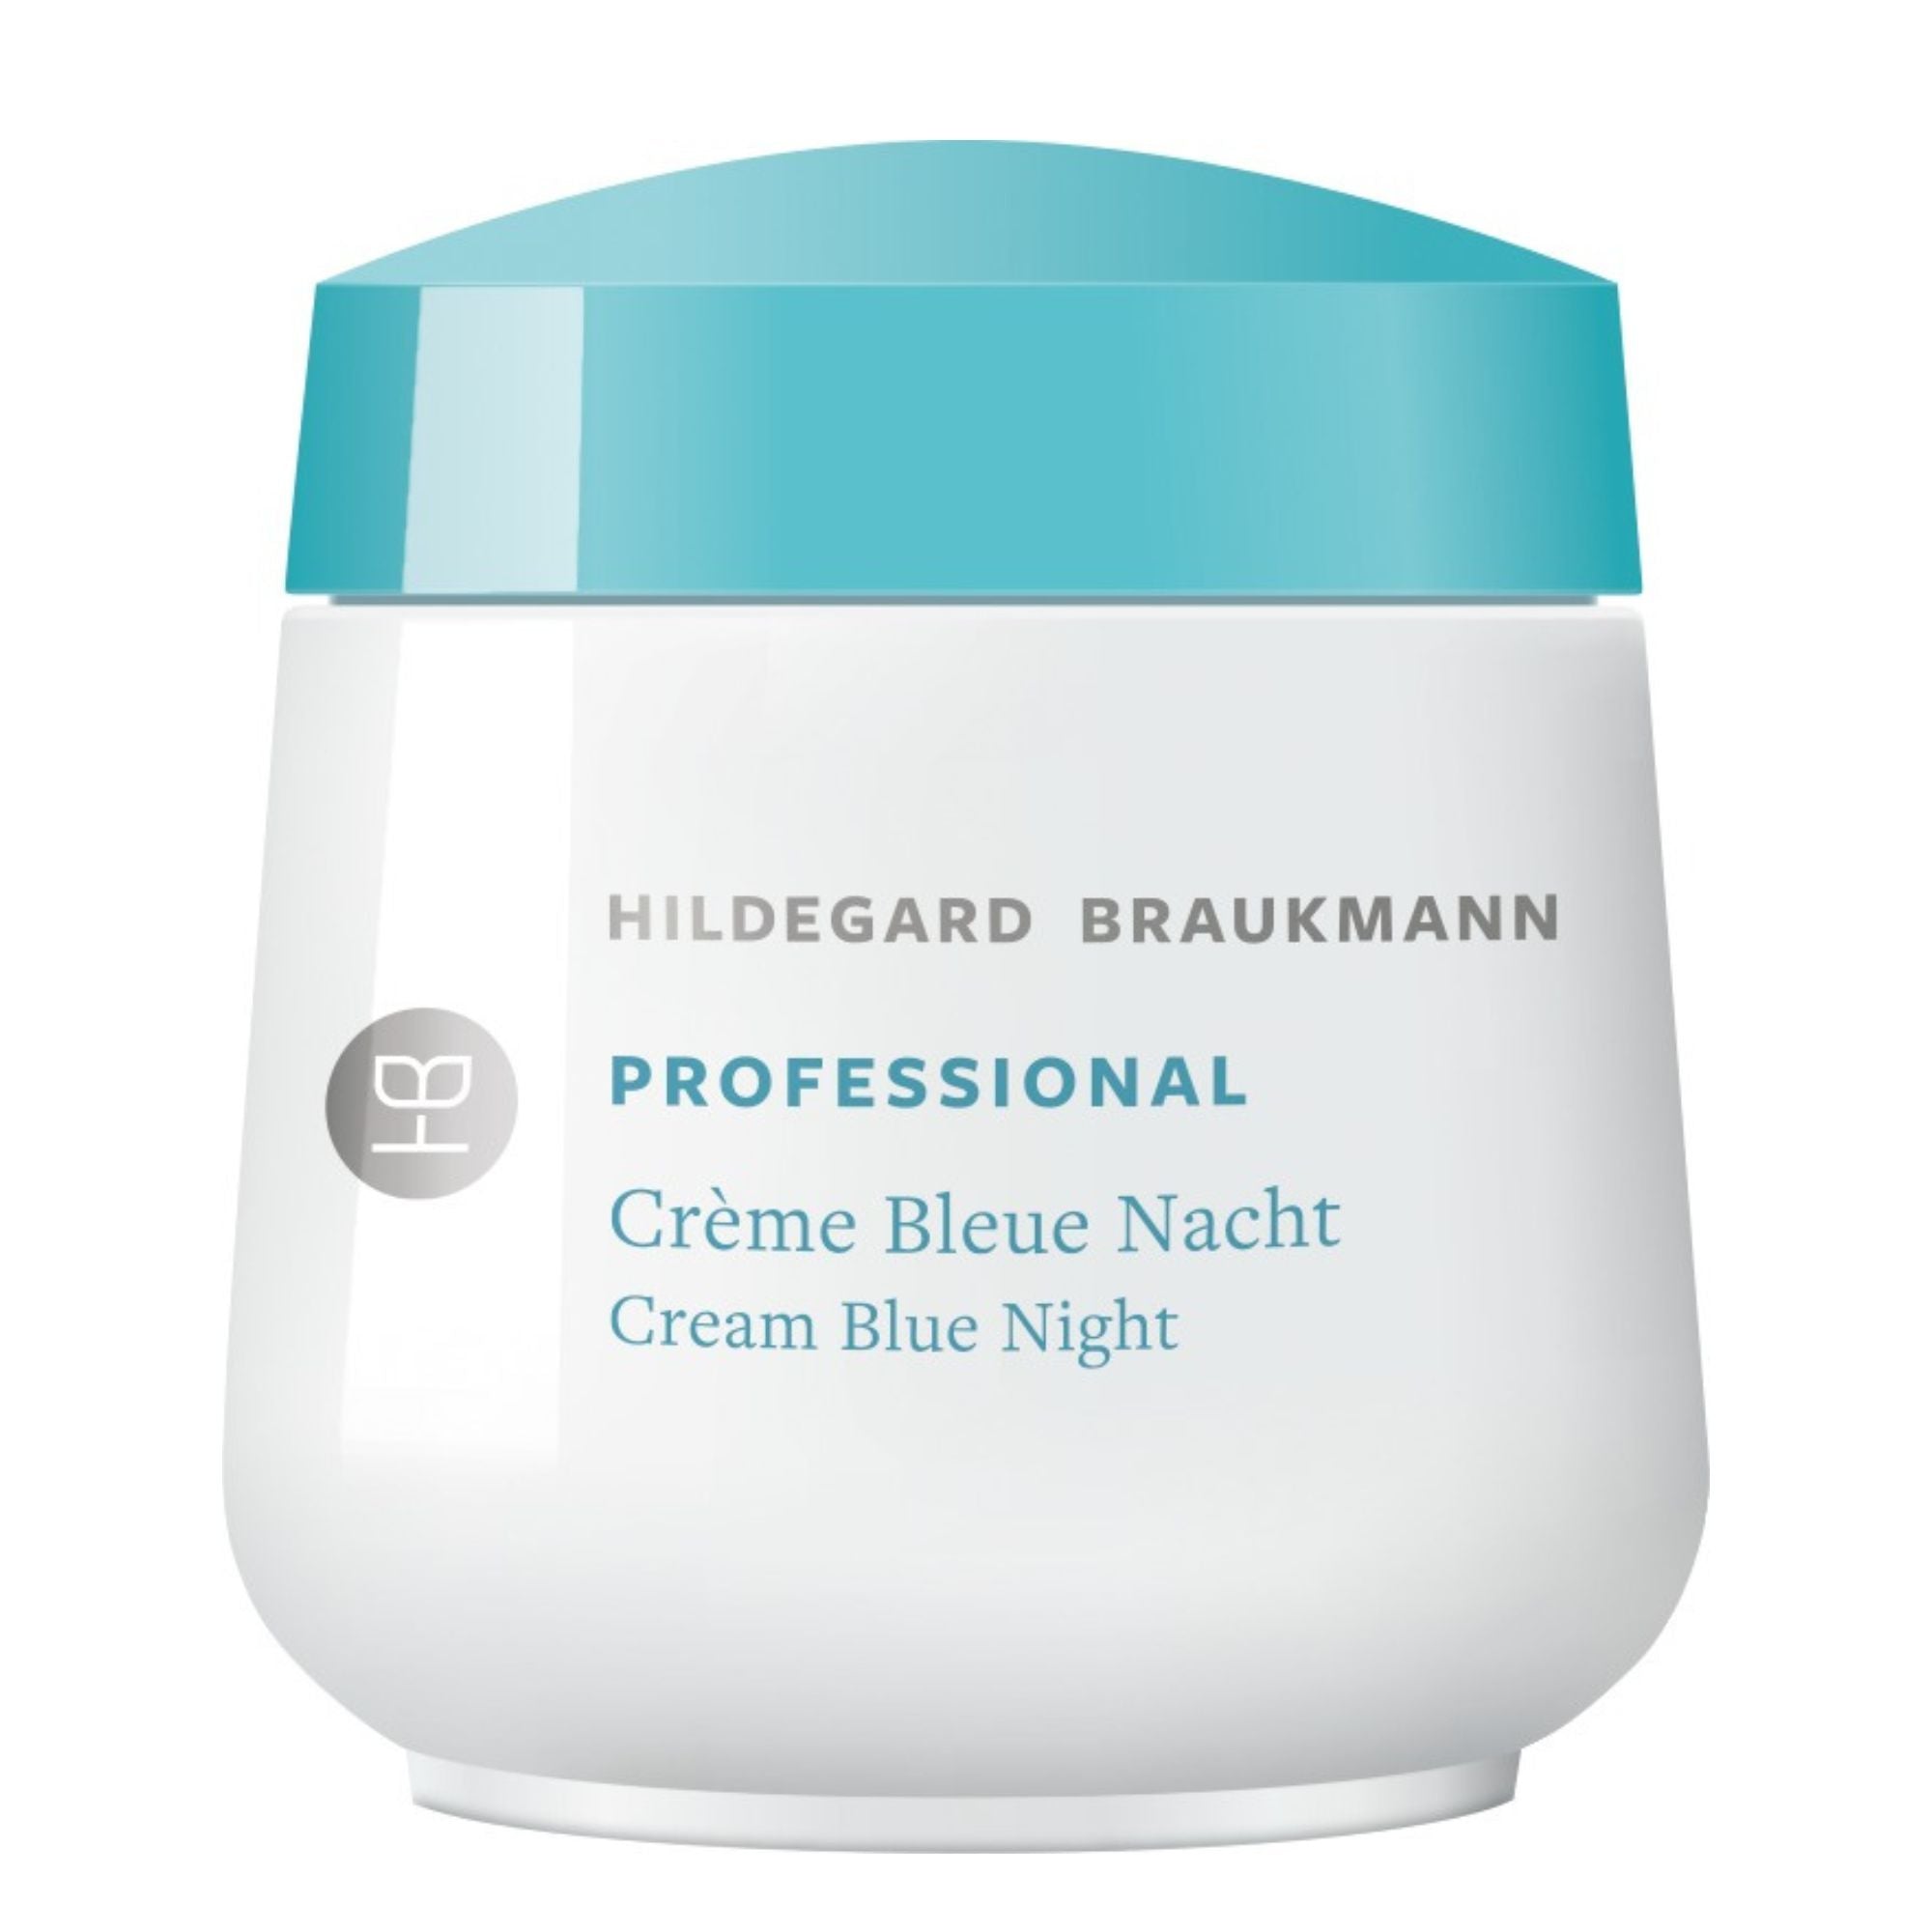 Hildegard Braukmann Professional Creme Bleue Nacht (50ml)